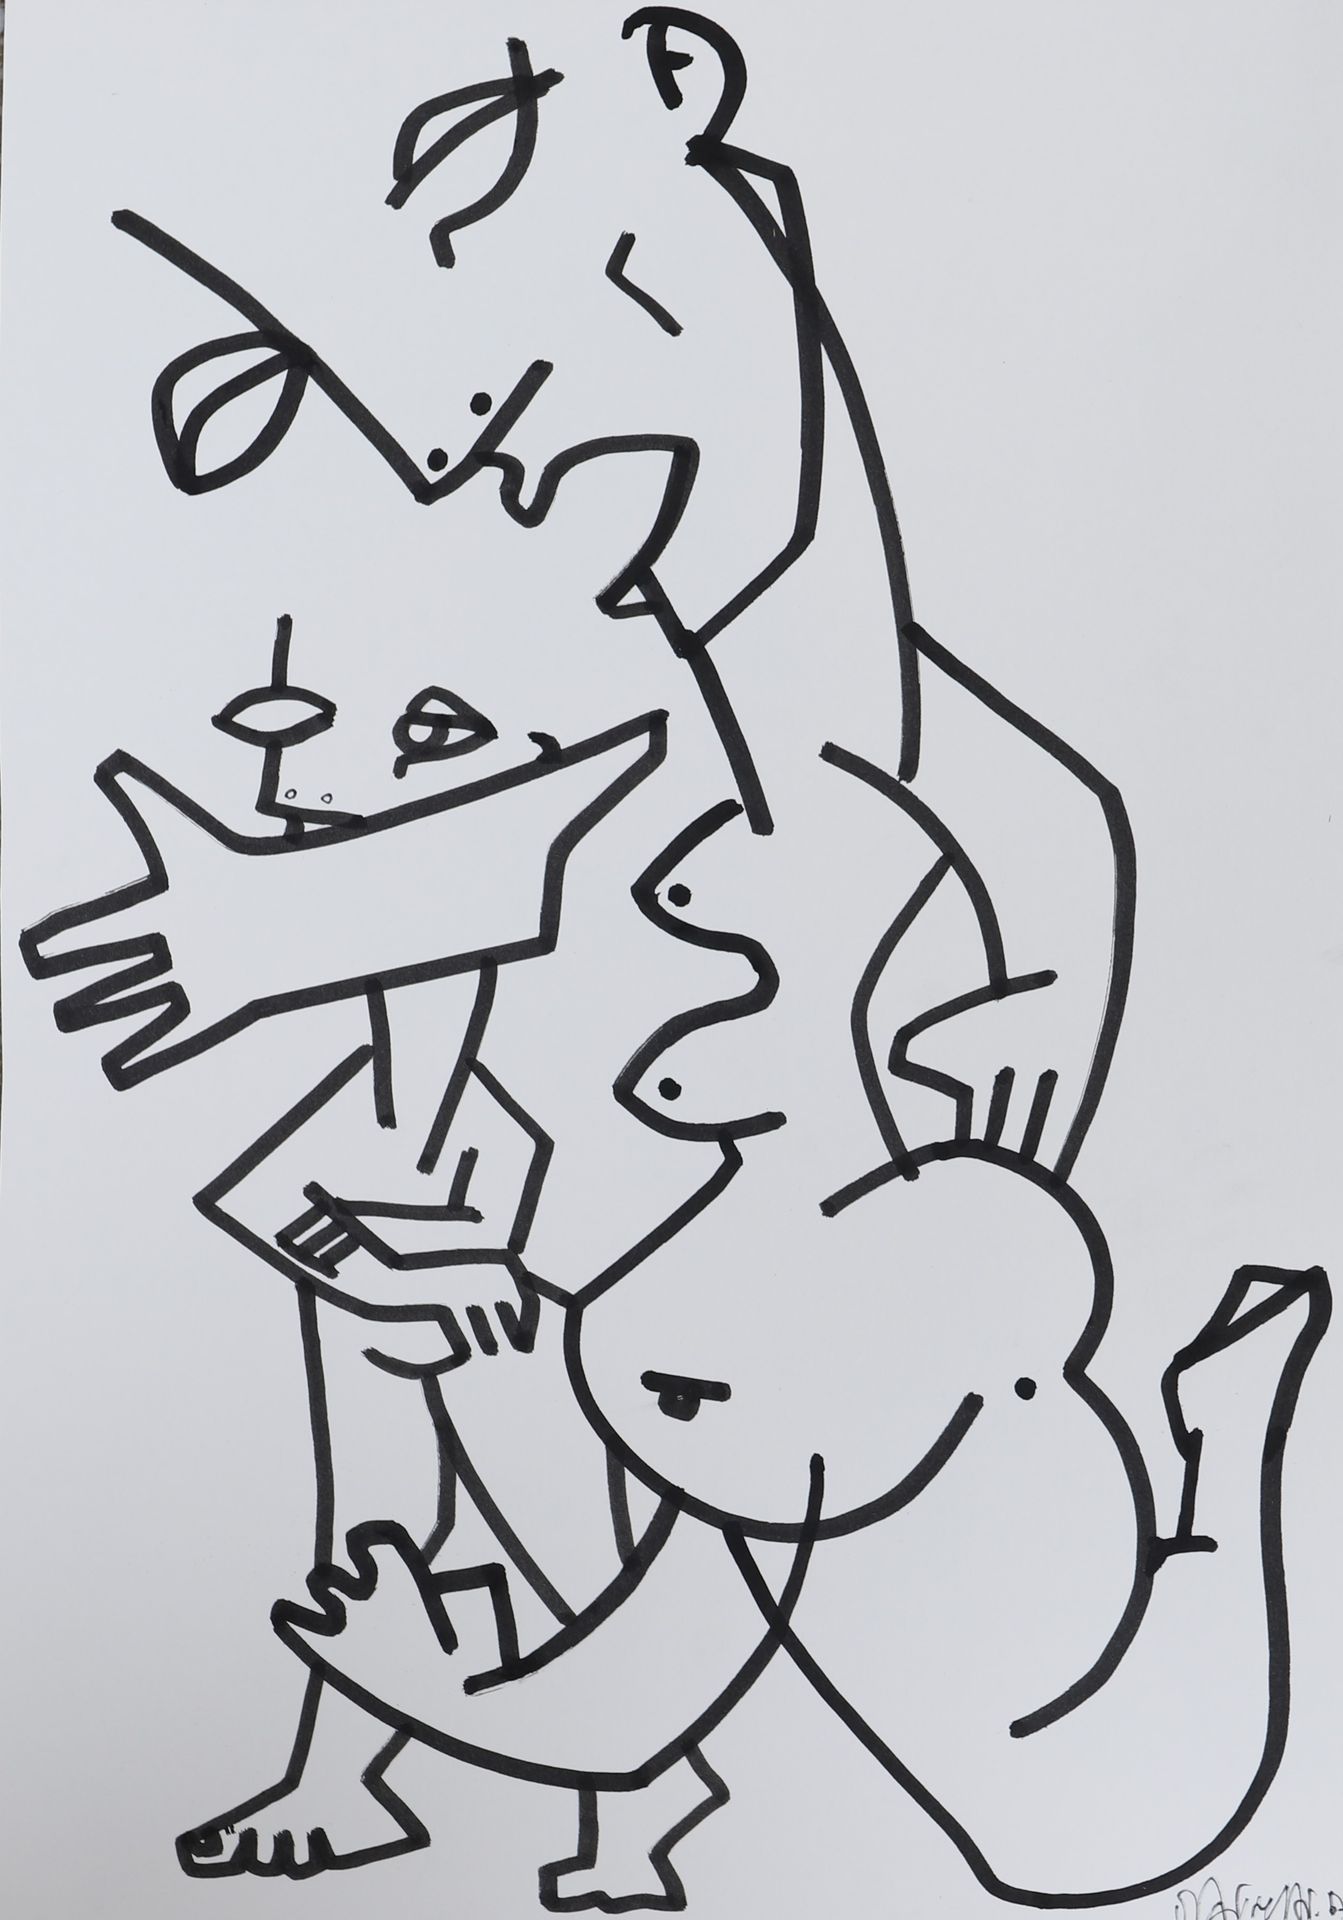 Null 朱利安-马里内蒂（生于1967年

法国画家和雕塑家

单色毛笔画。右下方有签名和日期17。

当代时期

出处：卢森堡私人收藏

尺寸：高：42；宽&hellip;